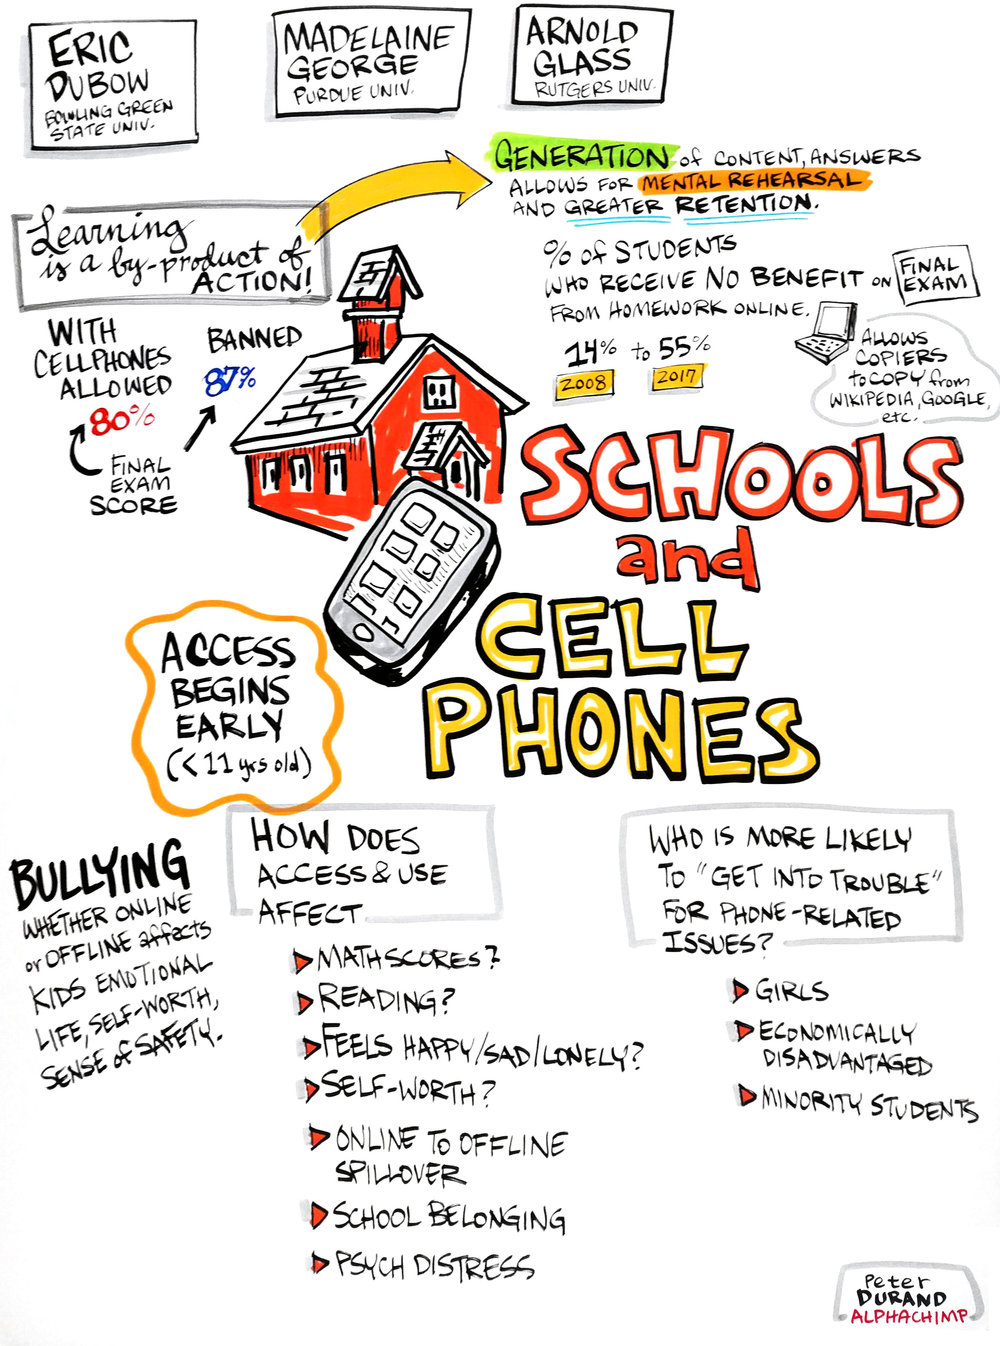 Cellphones in Schools